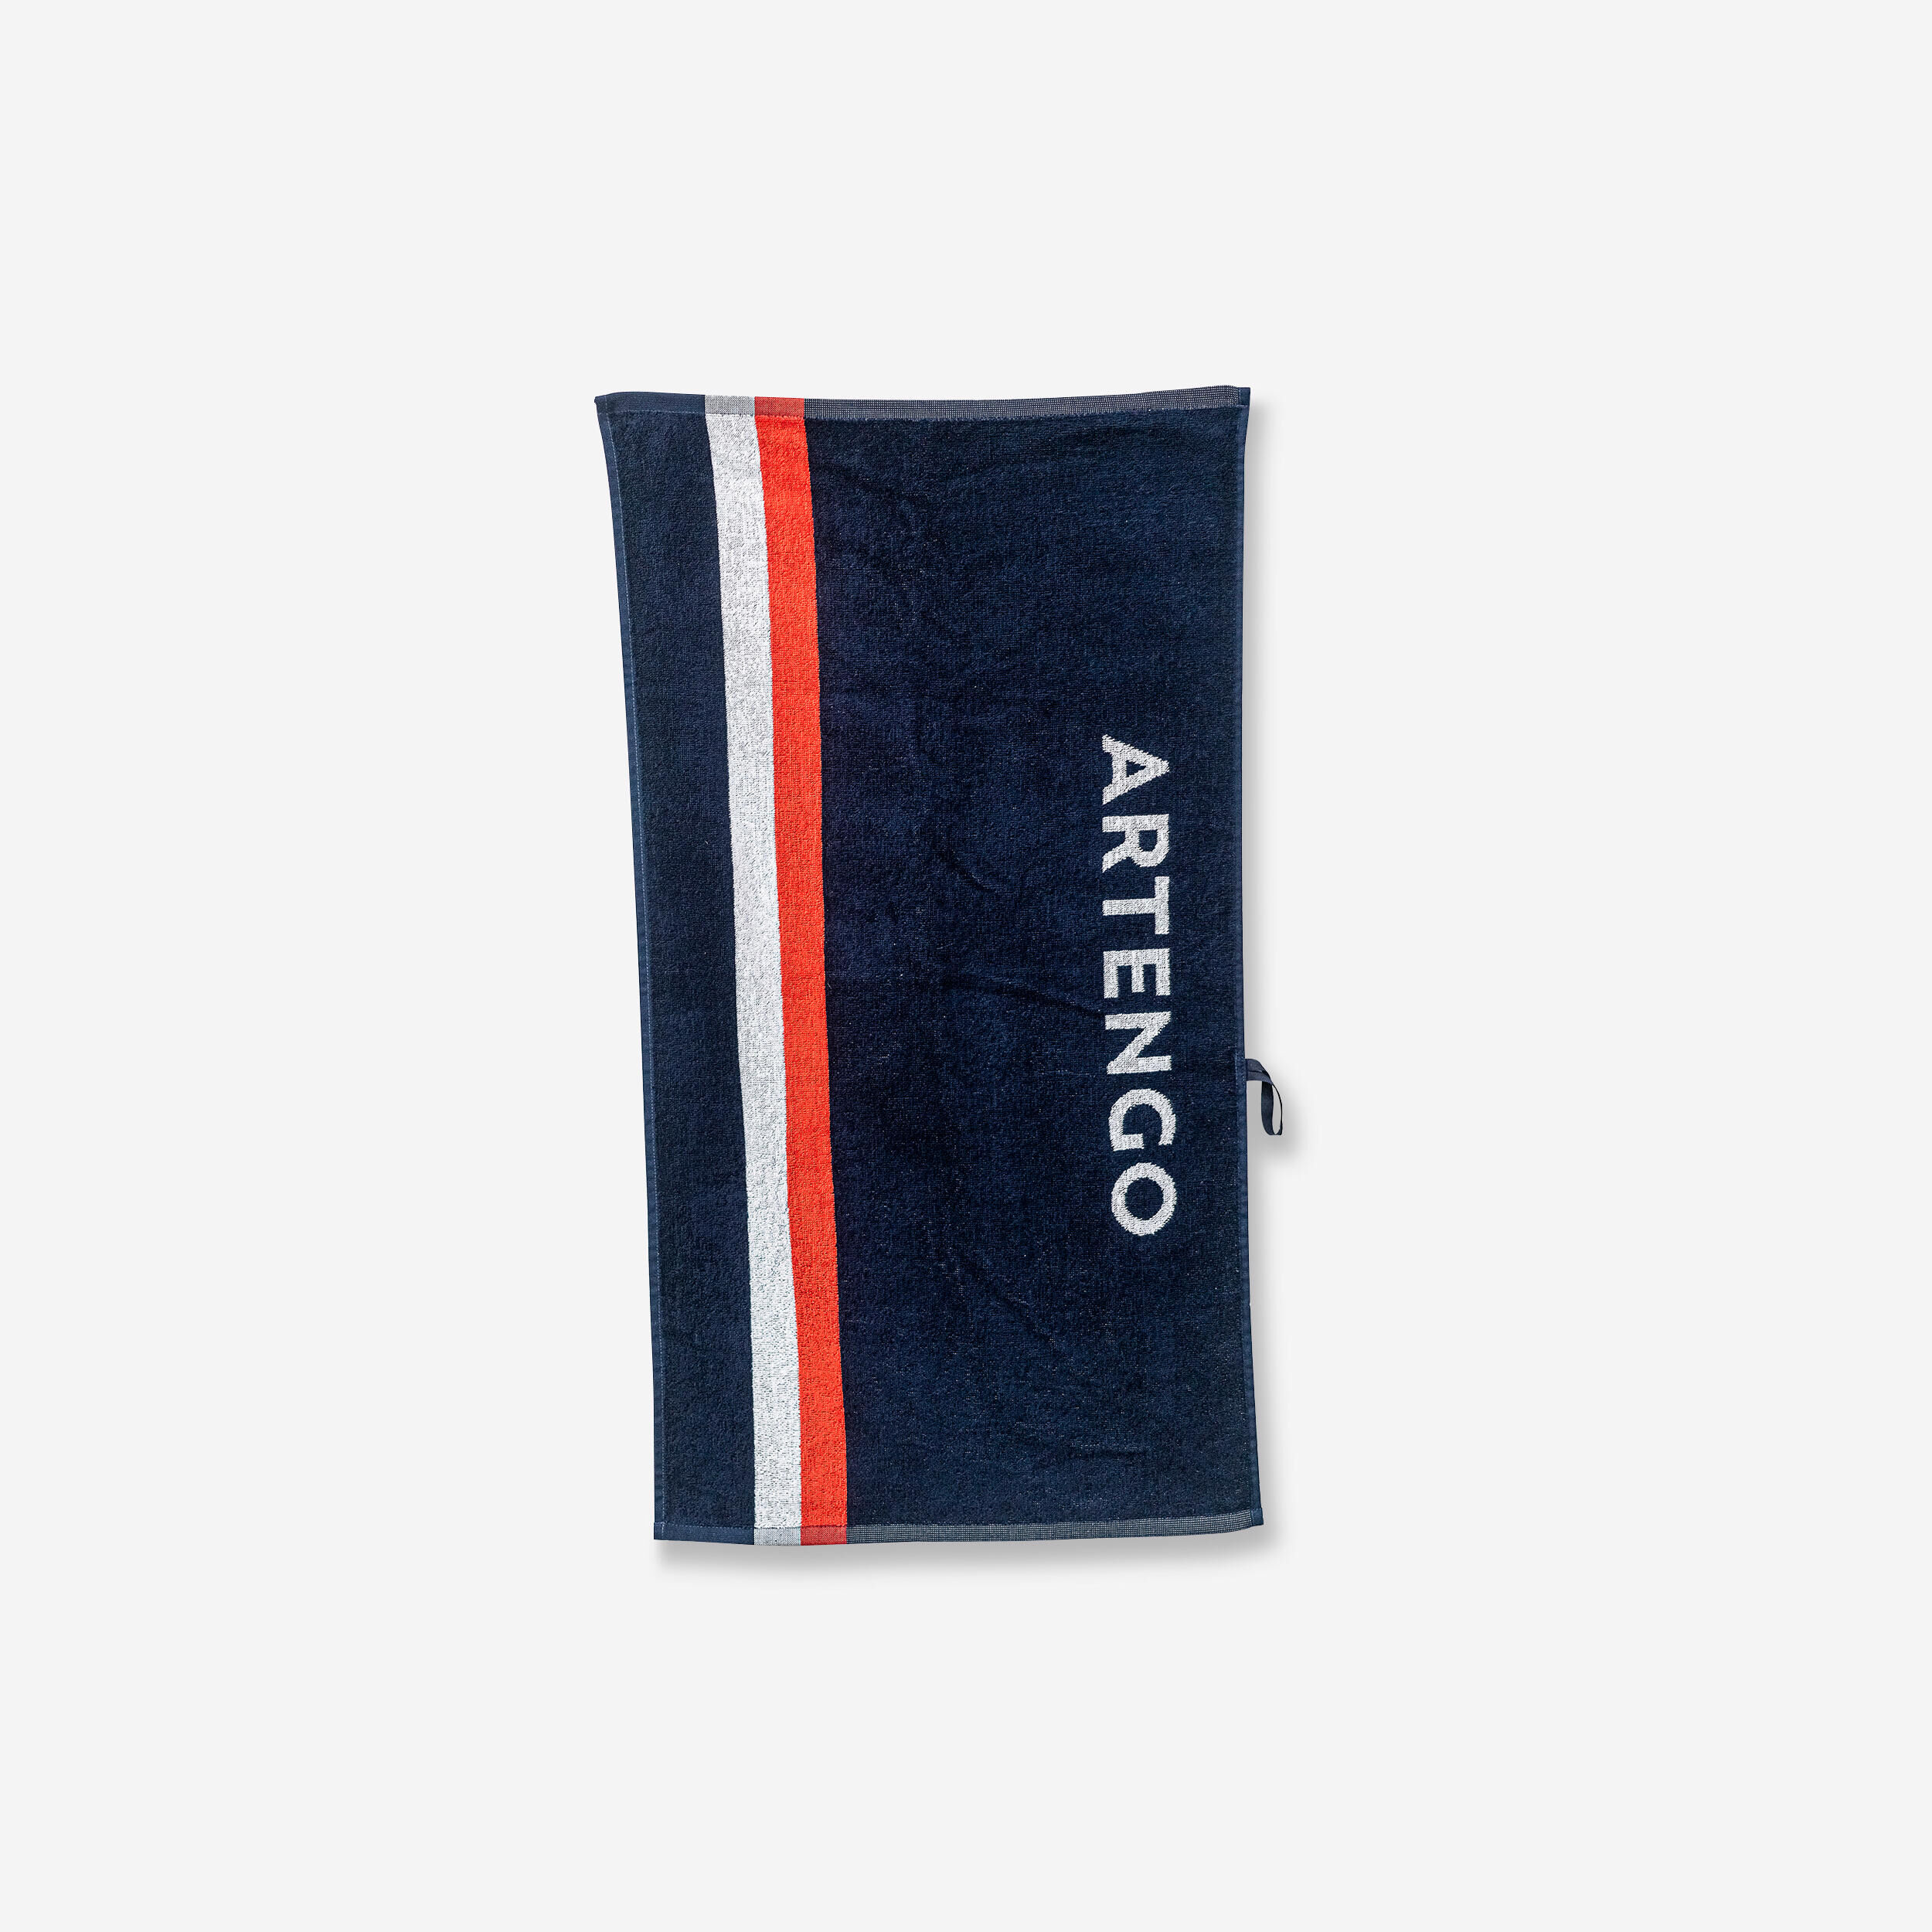 ARTENGO Racket Sports Towel TS 100 - Retro Navy